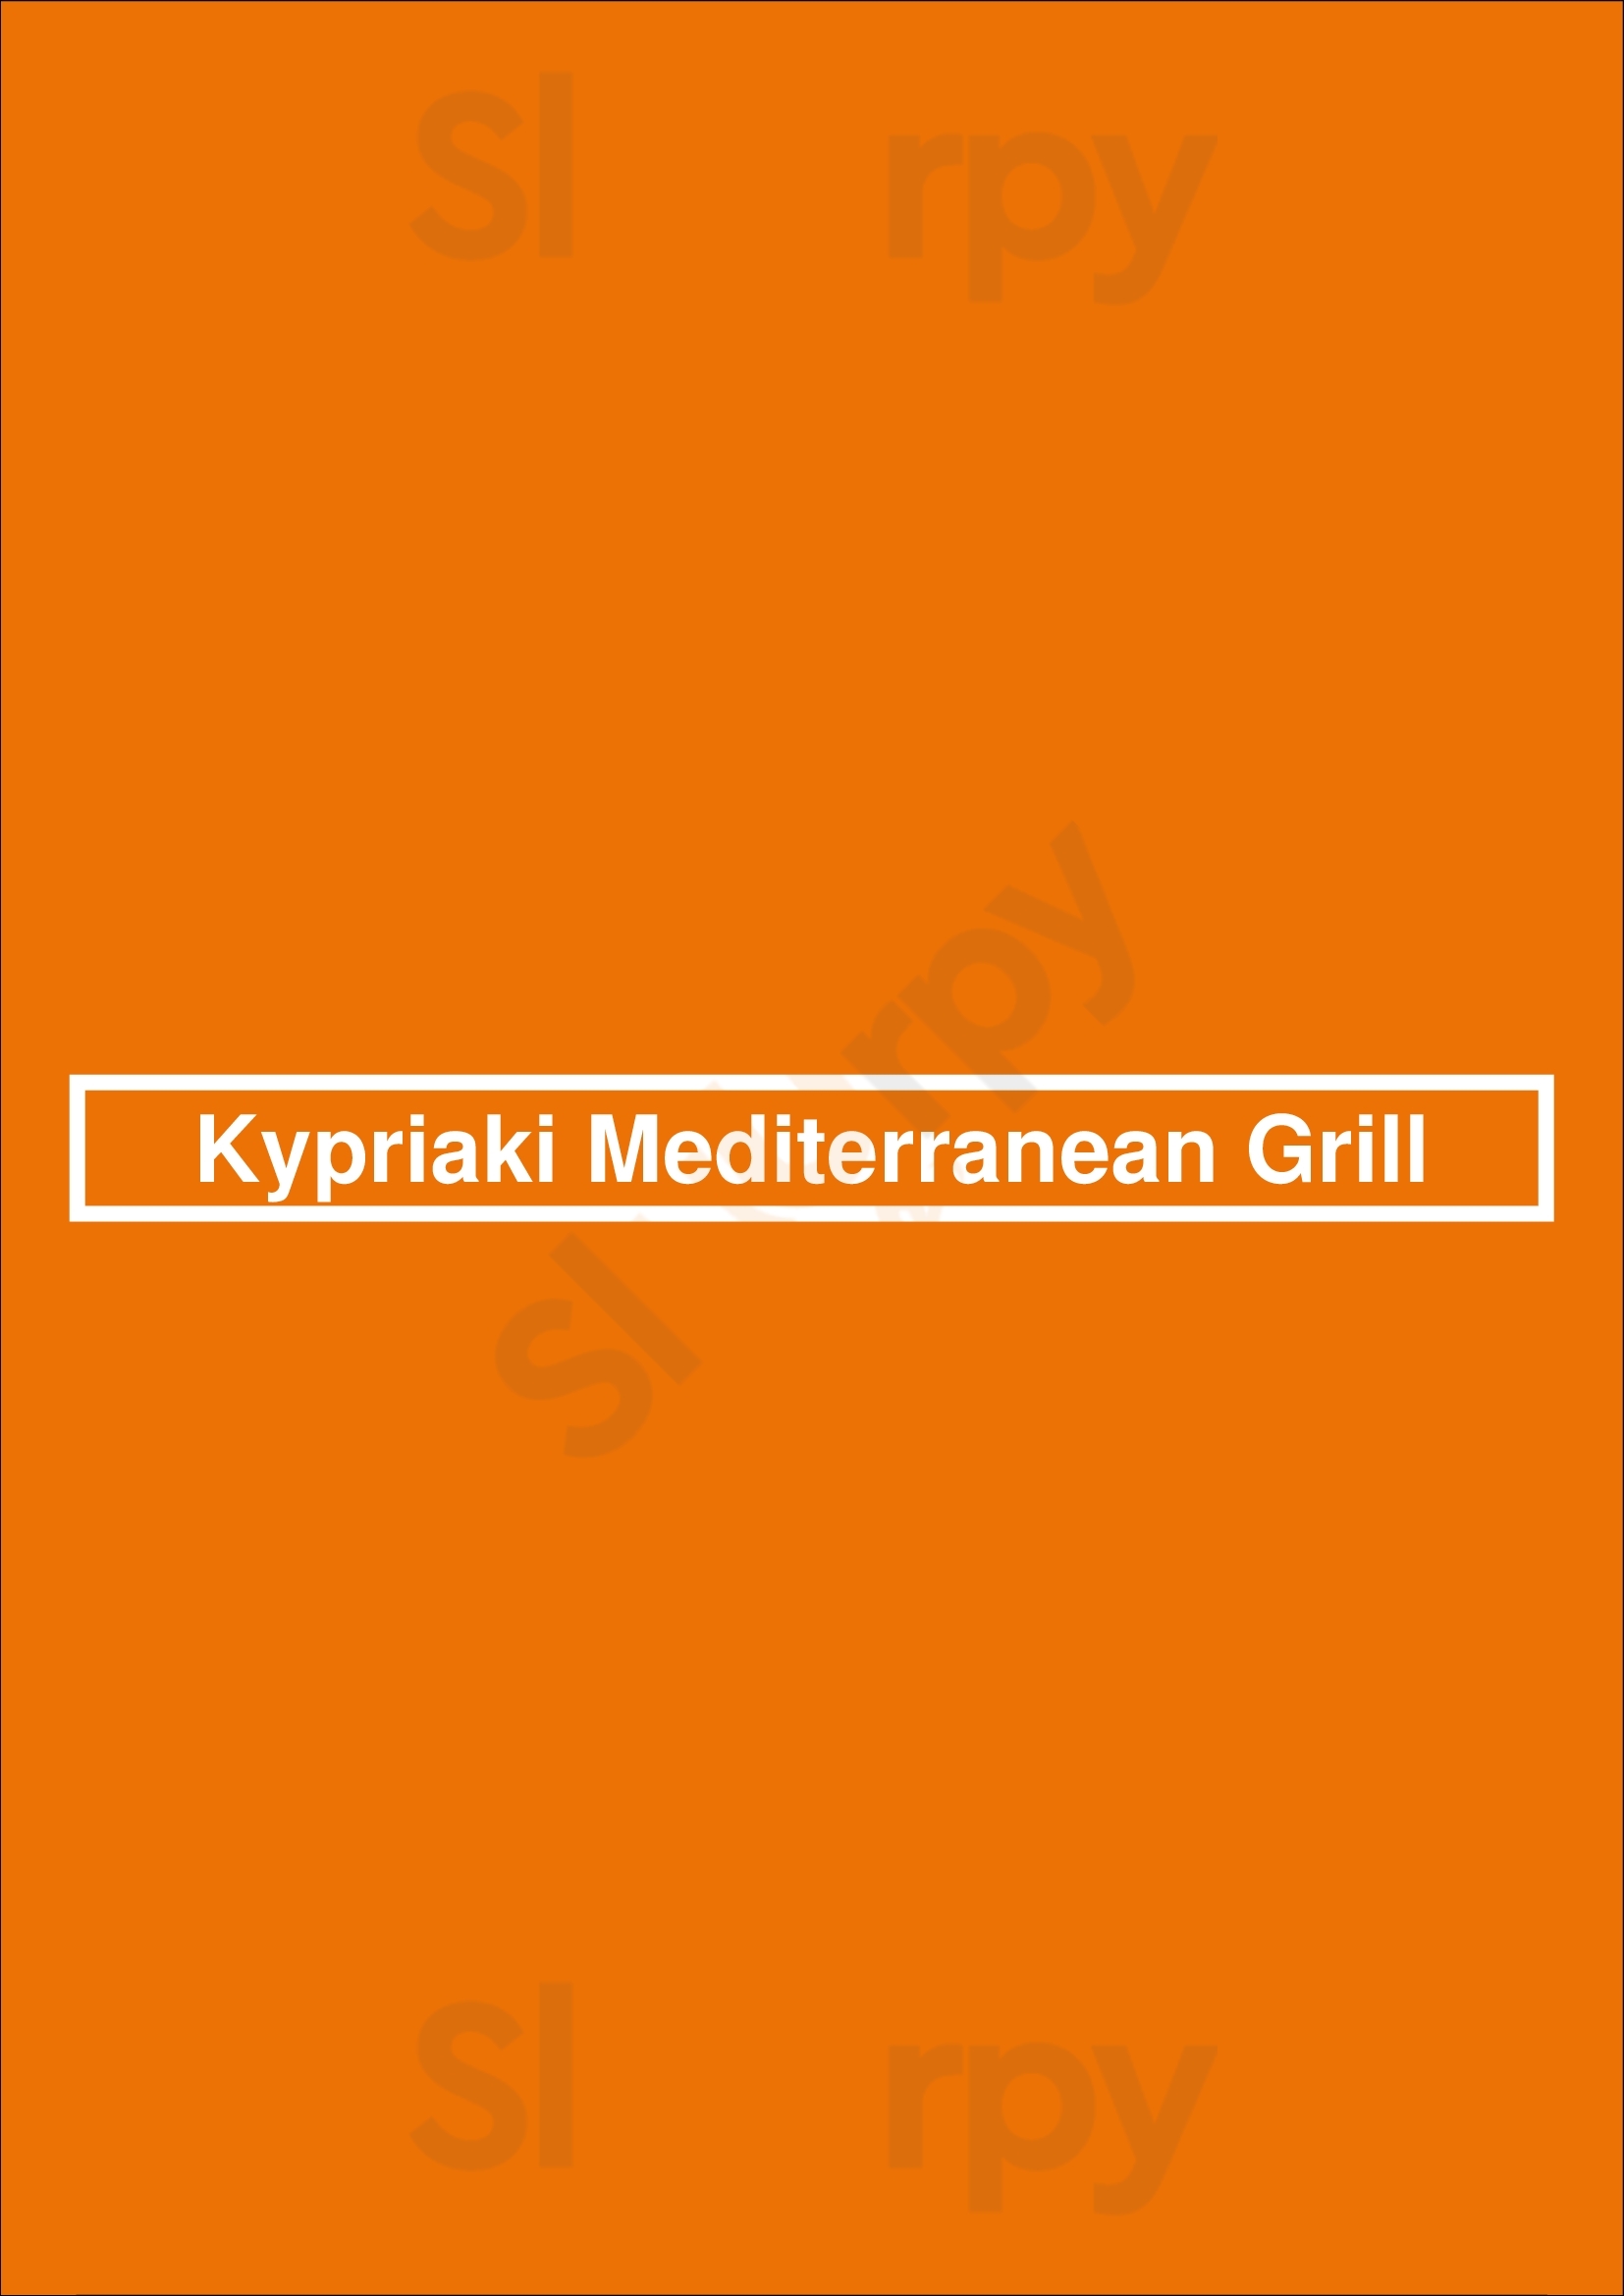 Kypriaki Mediterranean Grill North Vancouver Menu - 1